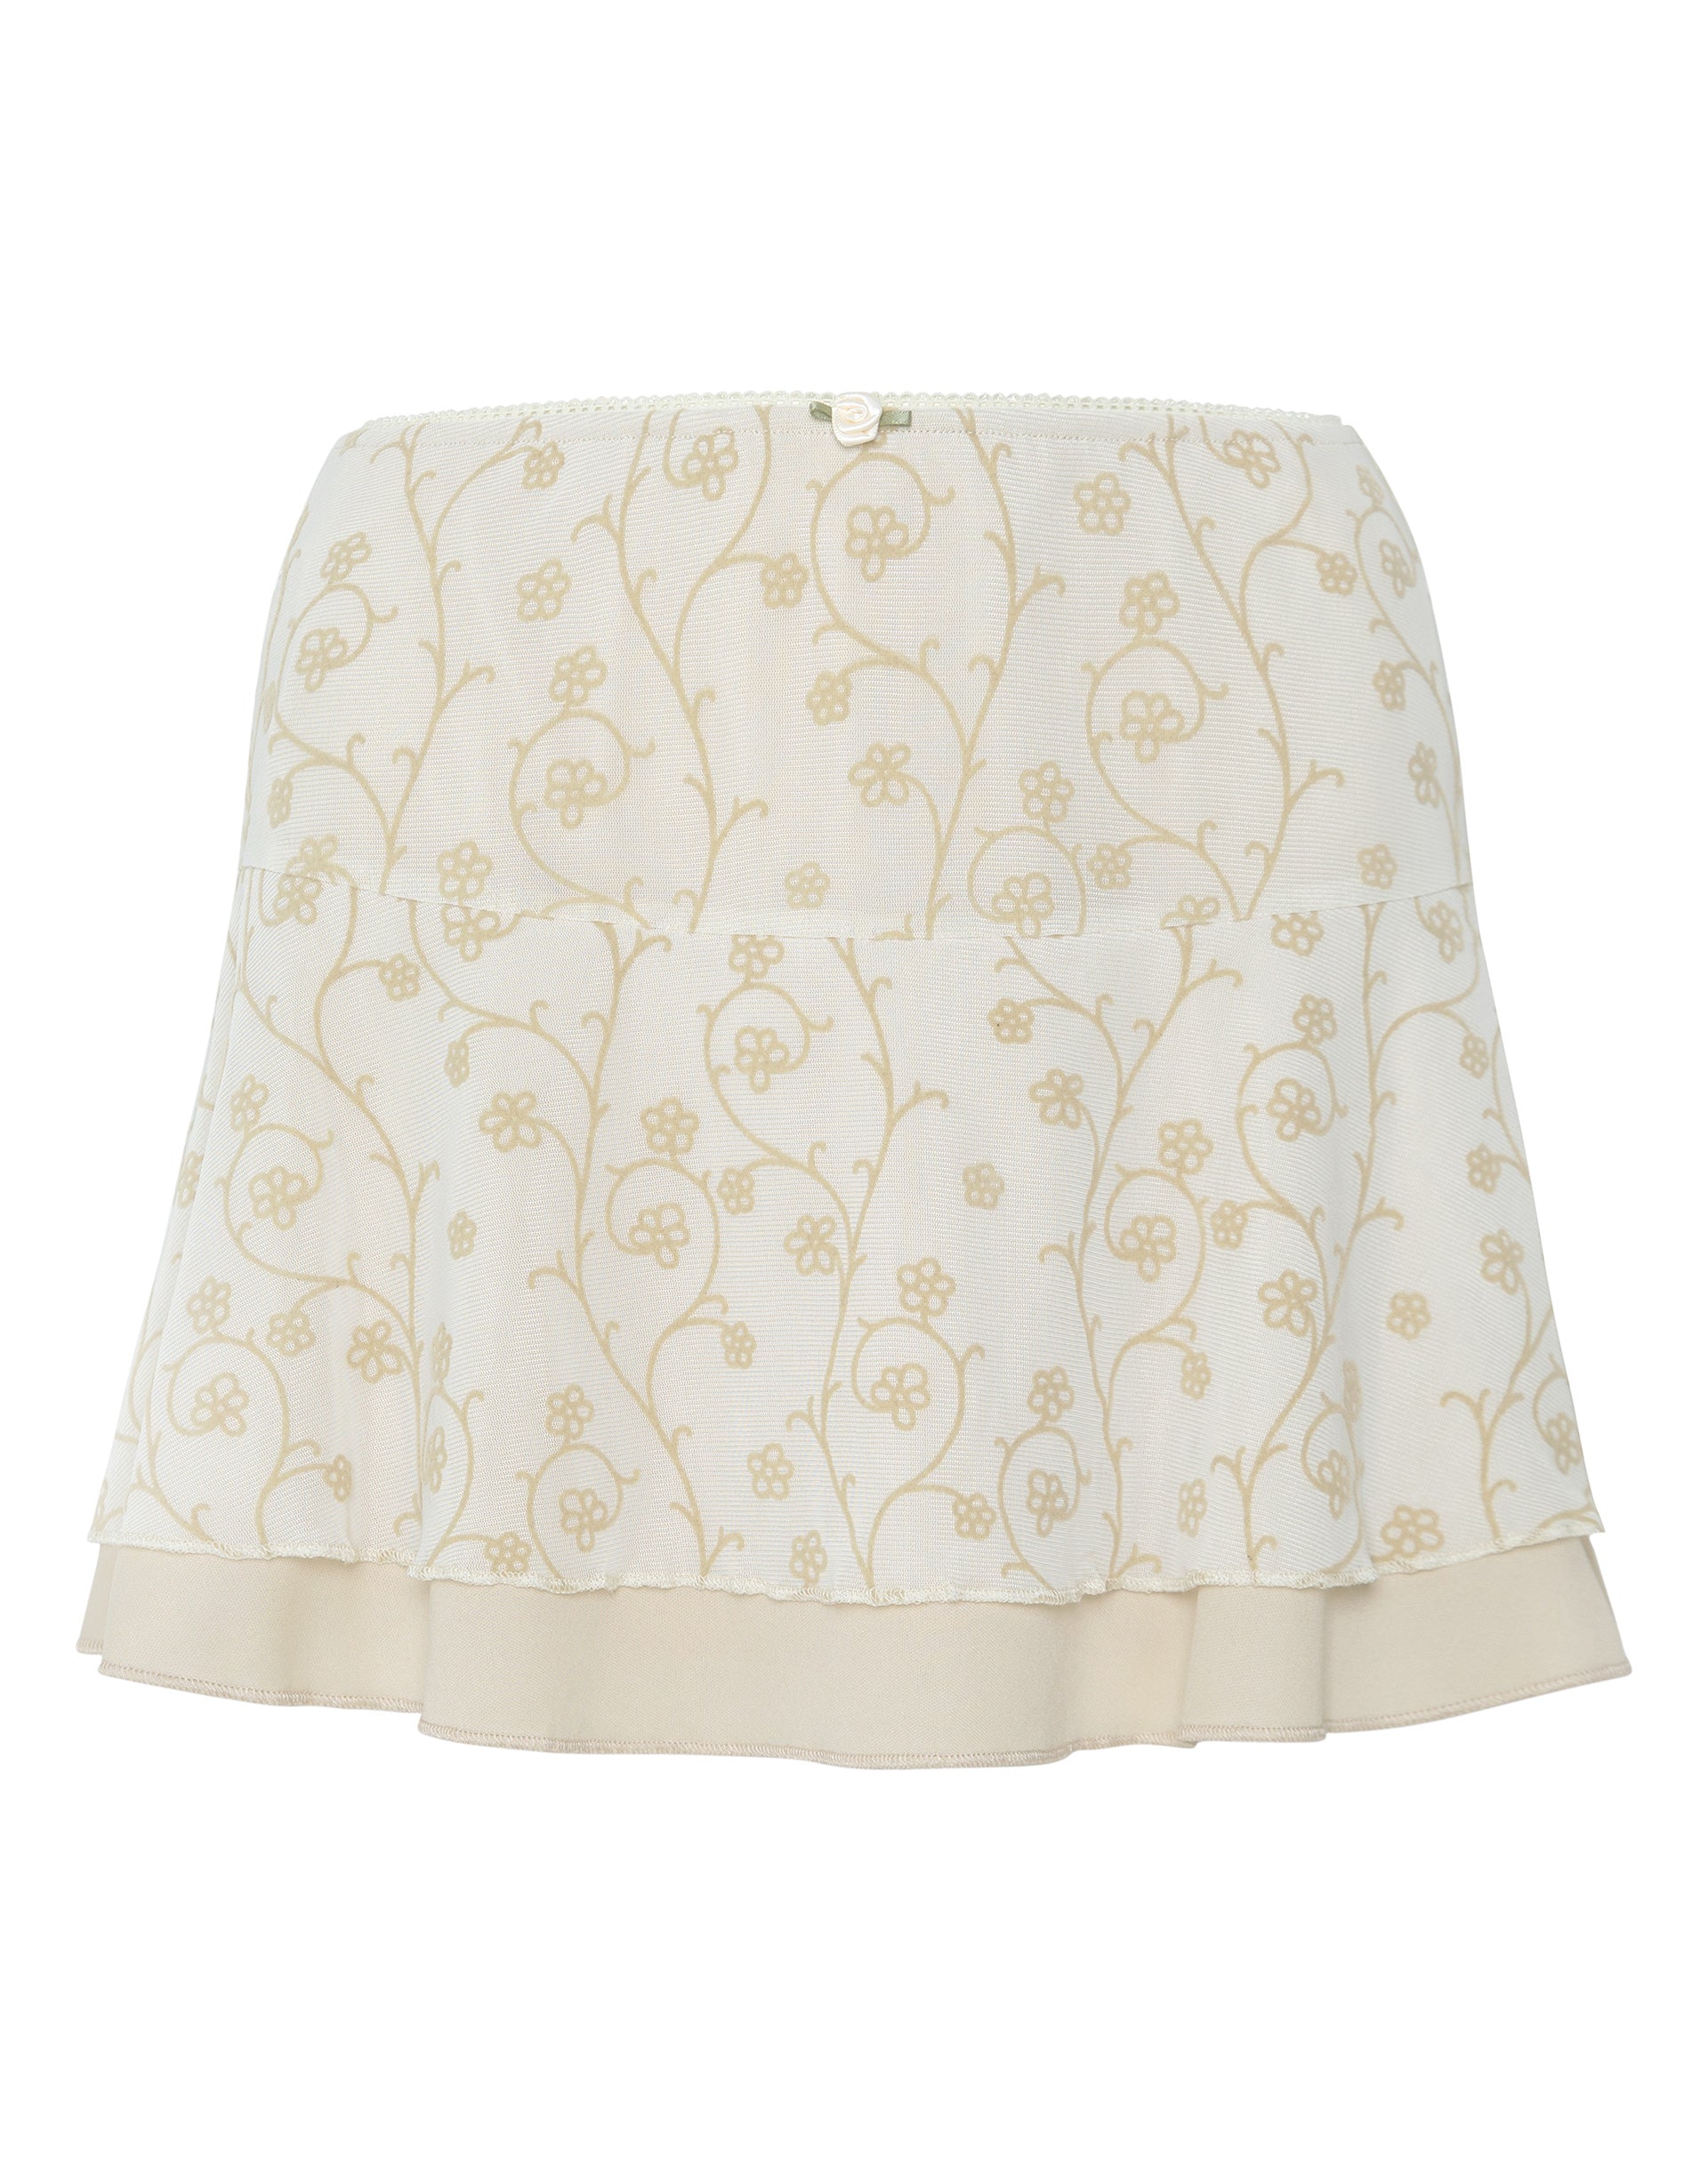 image of Friska Mini Skirt in Beige Mesh Light Tan Flock